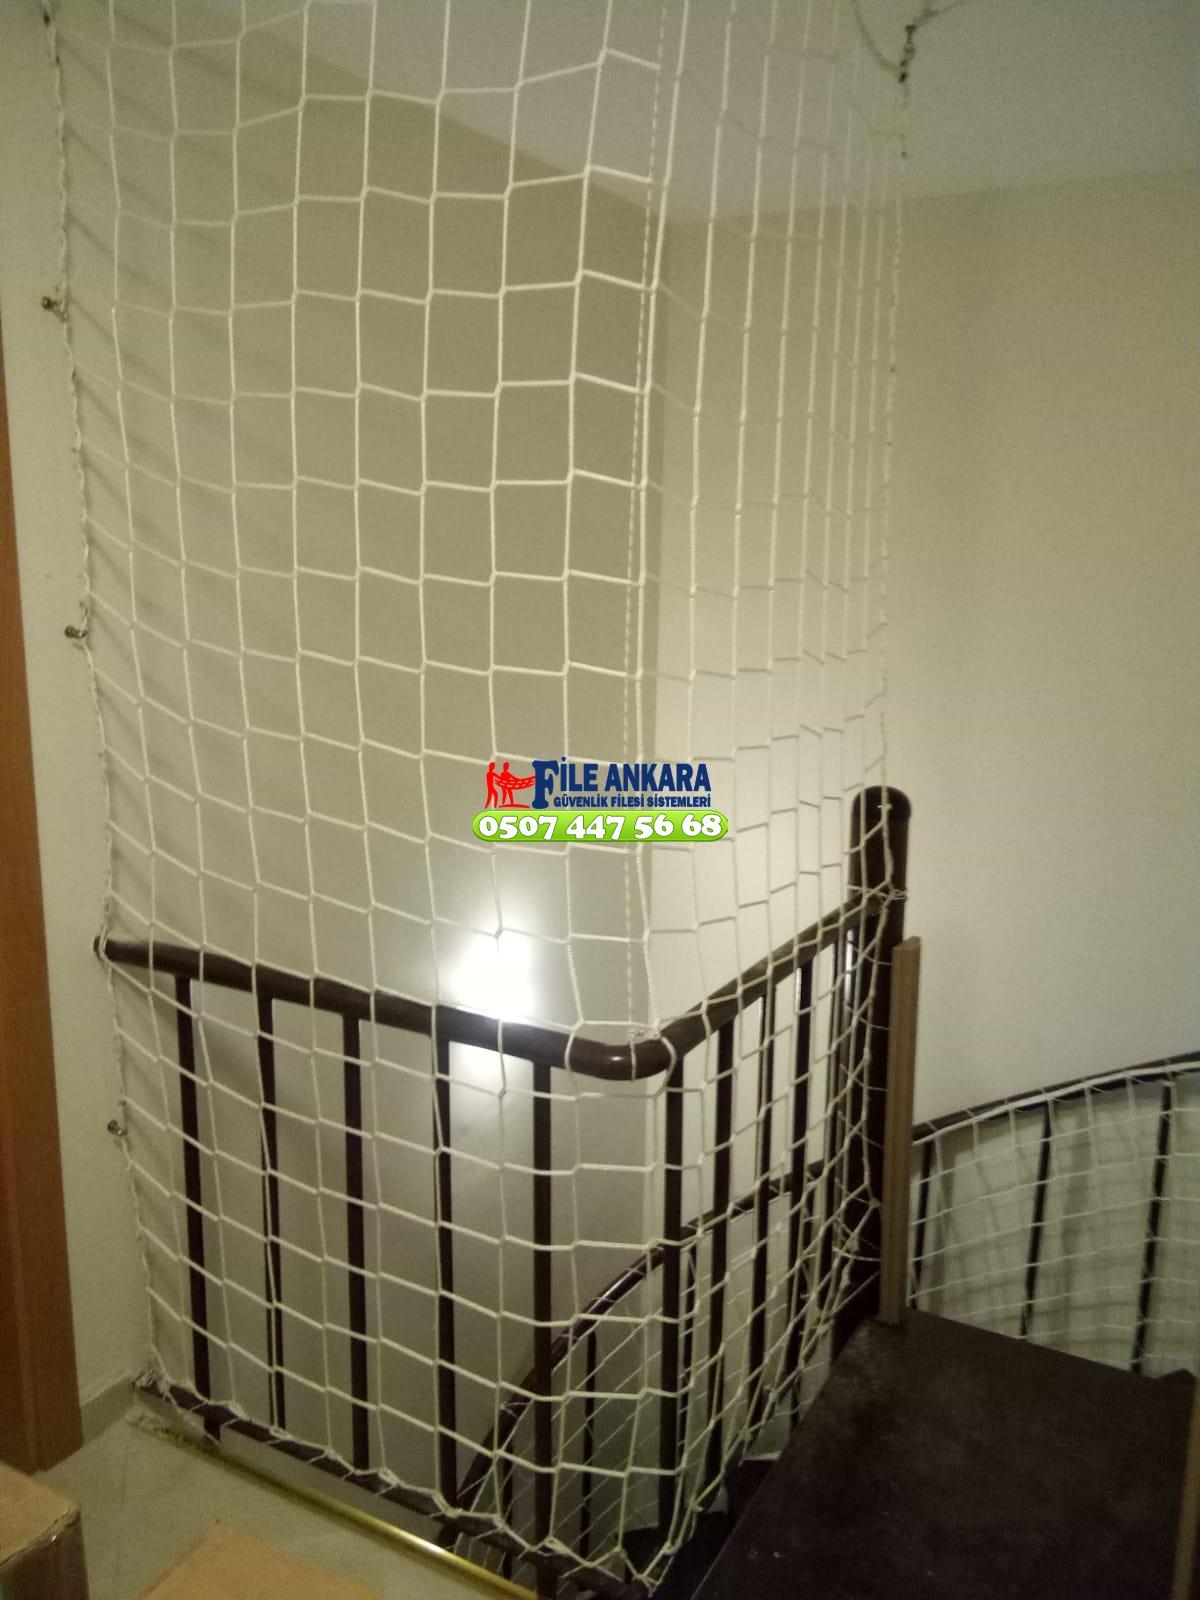 Ankara  Balkon  koruma filesi - Merdiven filesi - En ucuz balkon güvenlik filesi satış ve montajı 0507 447 56 68